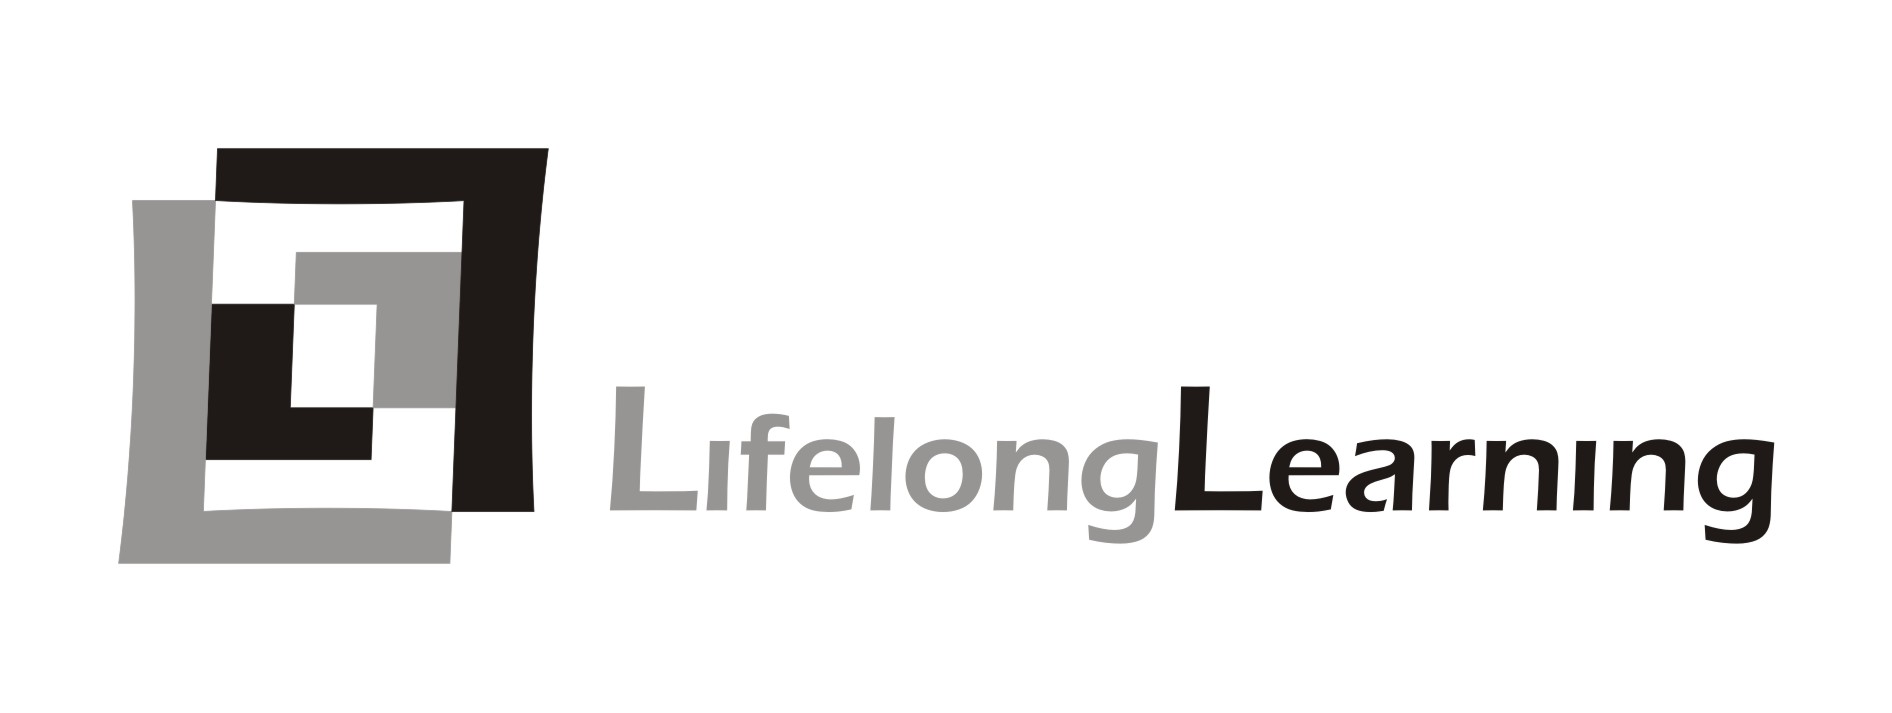 Stowarzyszenie Lifelong Learning